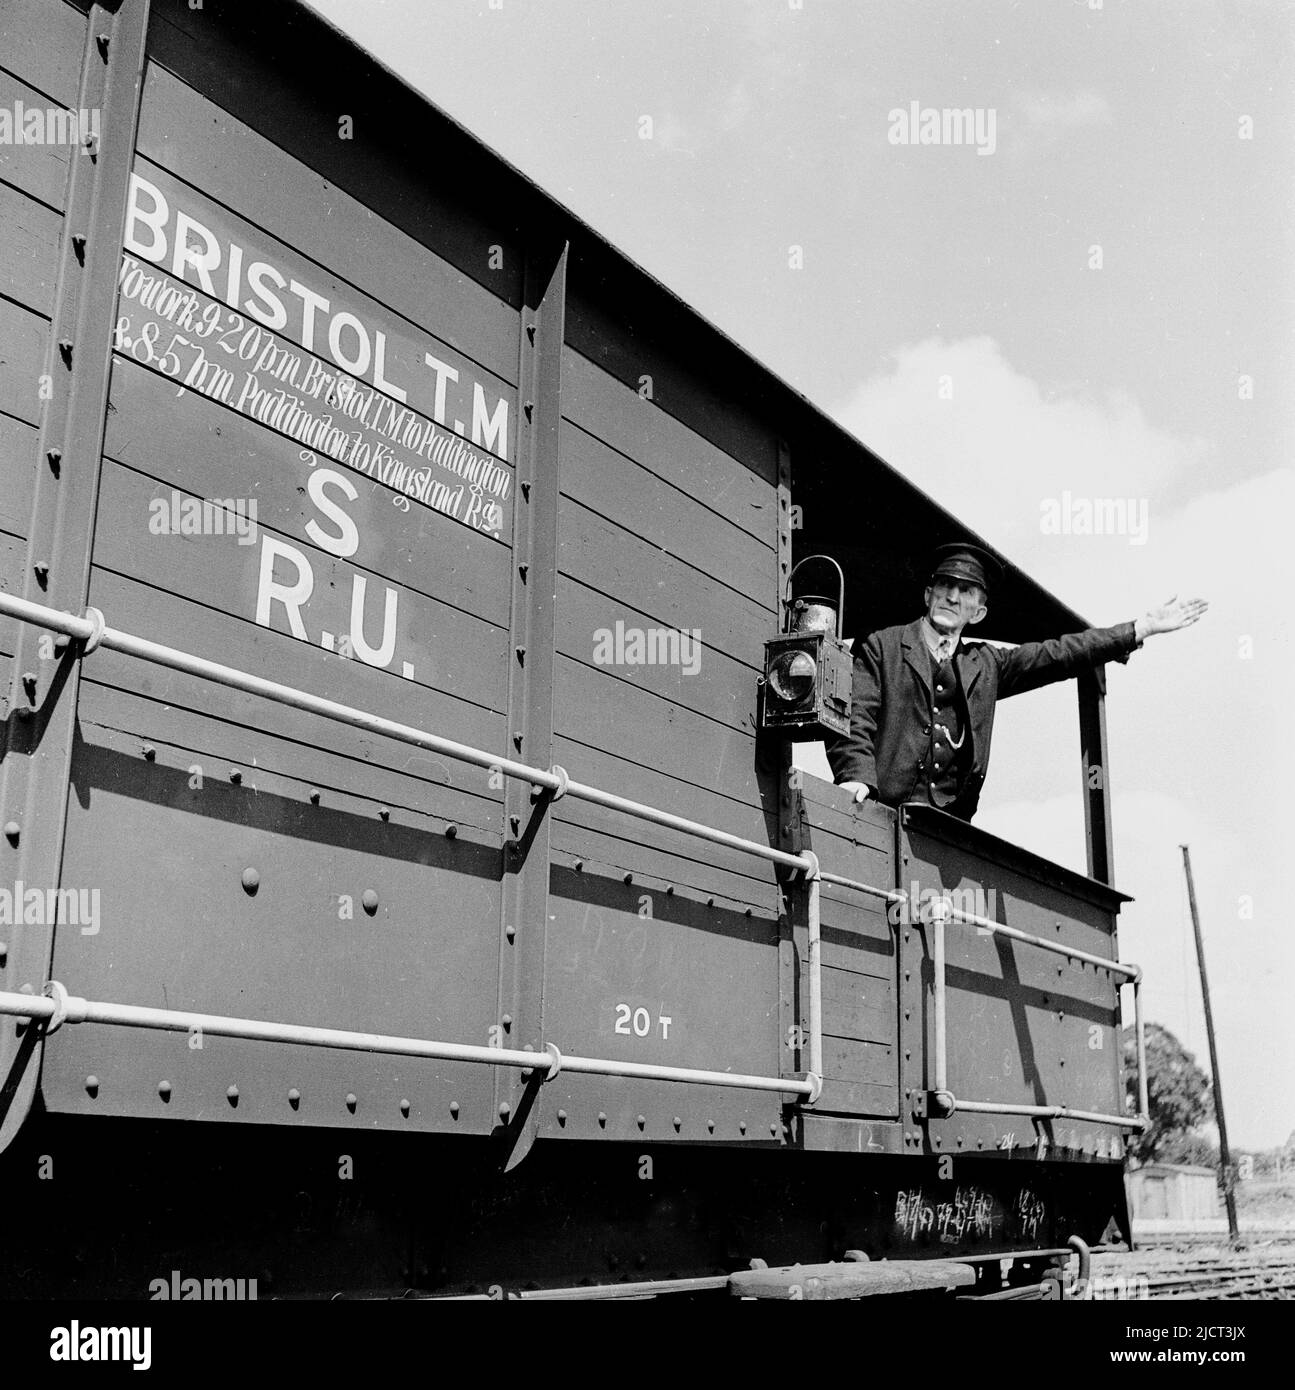 1950s, historisch, ein uniformierter Zugwächter im offenen Heck eines Güterwagens, der mit dem Arm nach außen stand und signalisierte, London Docks, England UK. Schreiben auf der Seite des Güterwagens, Bristol T. M, (Temple Mead) -Paddington. An der Seite des Holzwagens hängt eine Eisenbahnwarnlaterne. Stockfoto